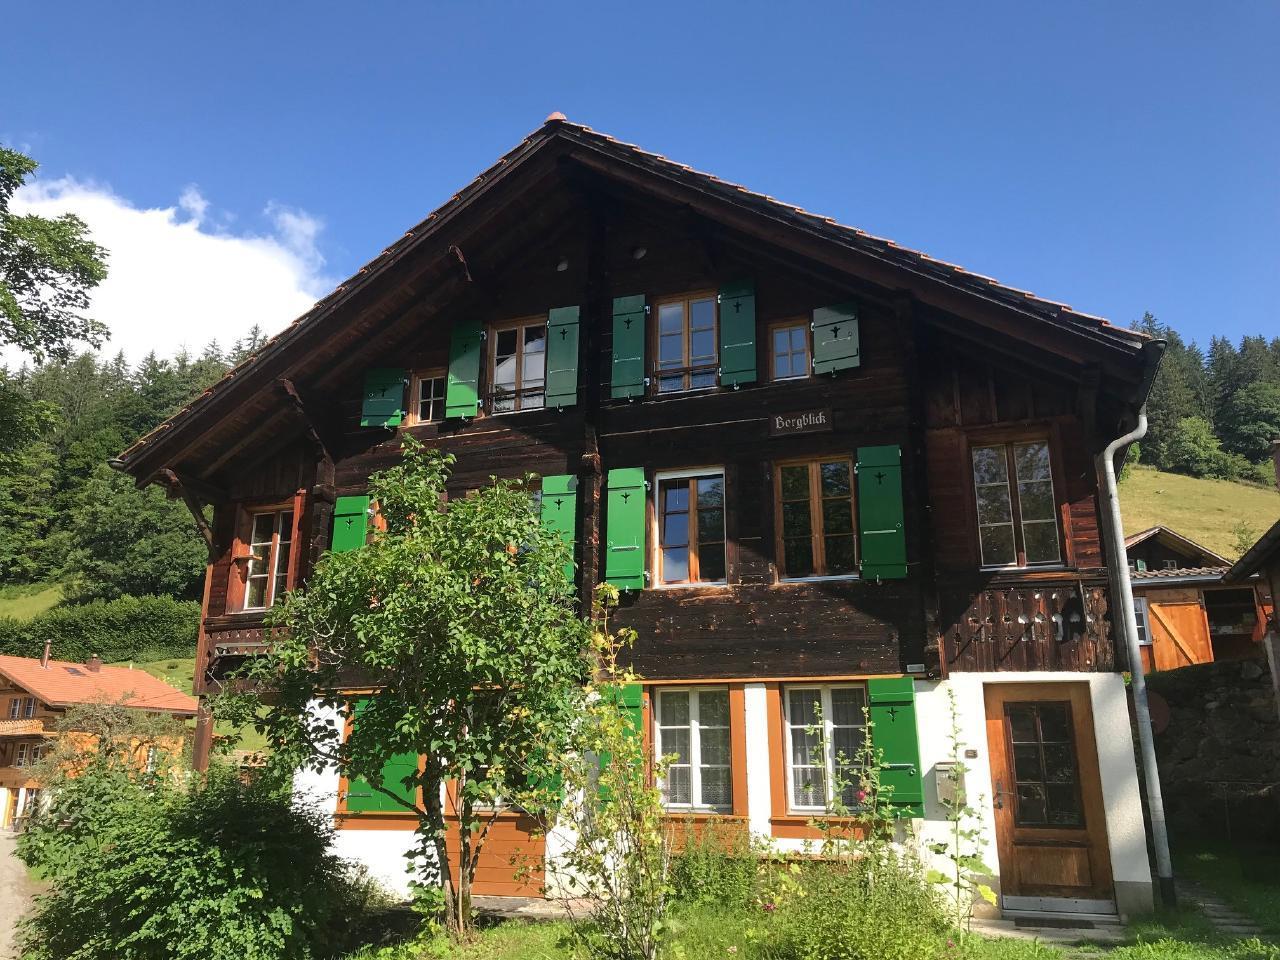 Chalet Bergblick, Wengwald Ferienwohnung in der Schweiz